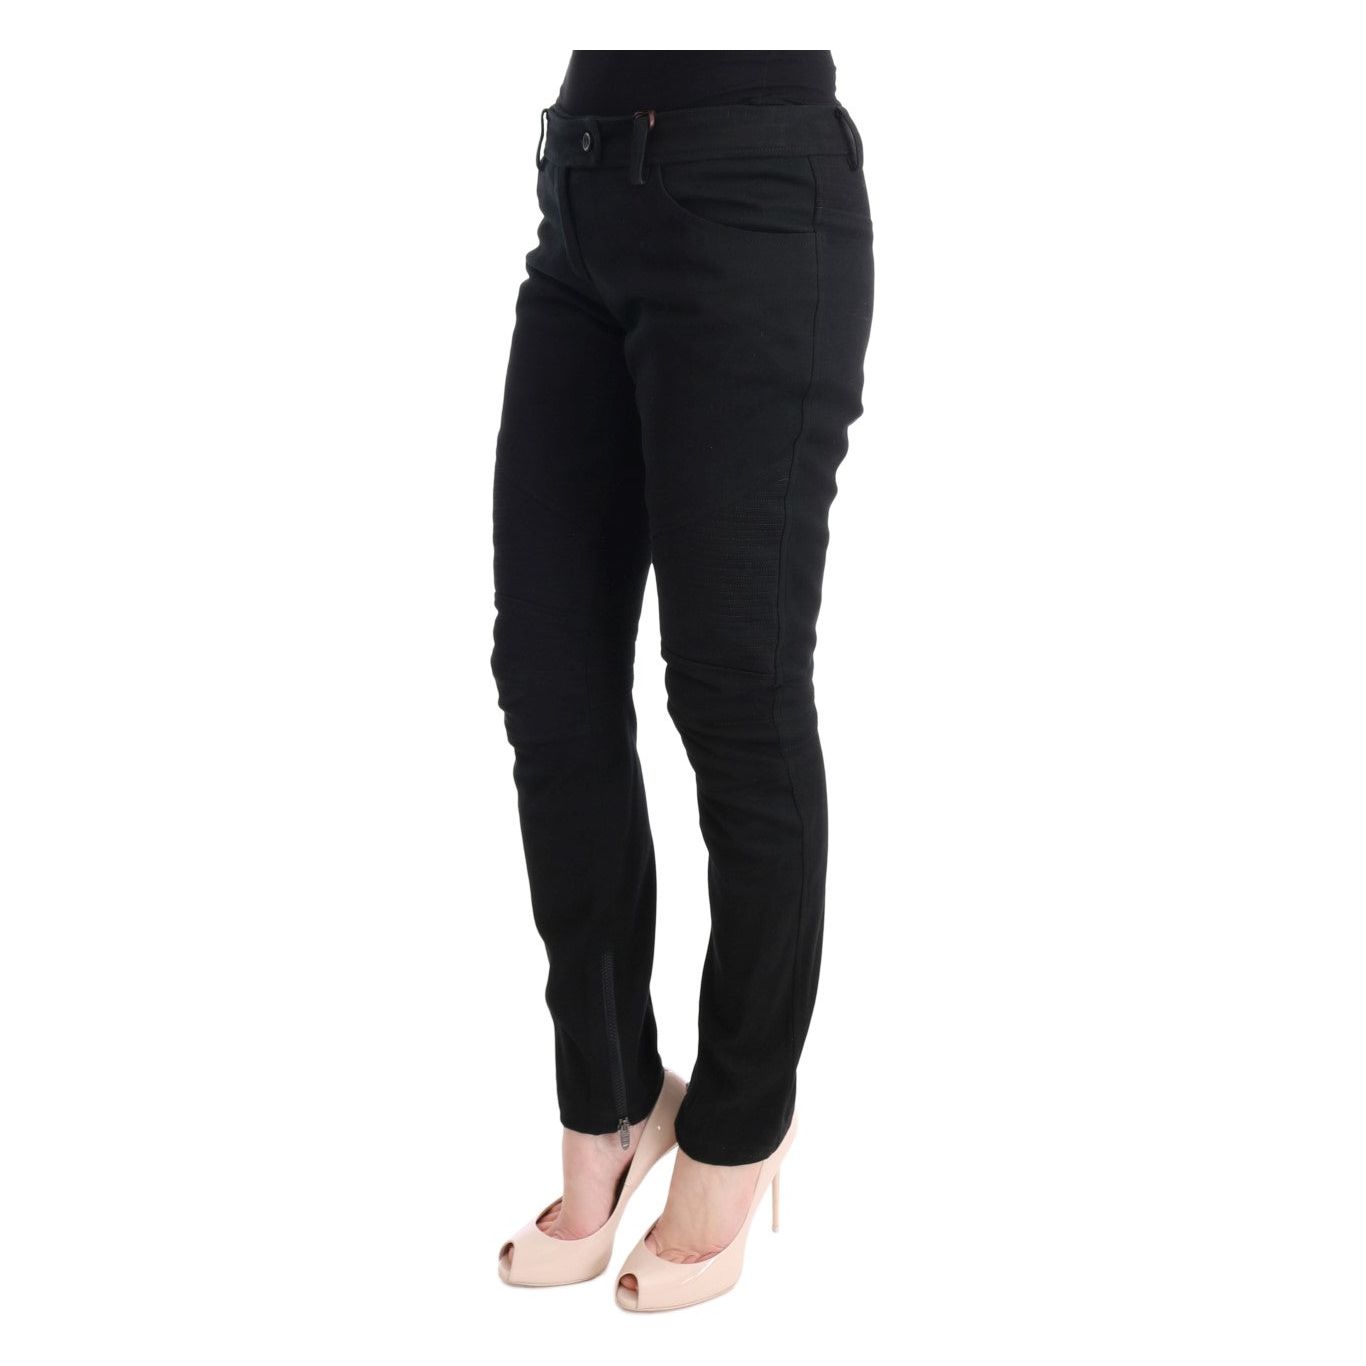 Ermanno Scervino Chic Black Slim Fit Trousers black-cotton-slim-fit-casual-pants Jeans & Pants 449168-black-cotton-slim-fit-casual-pants-1.jpg